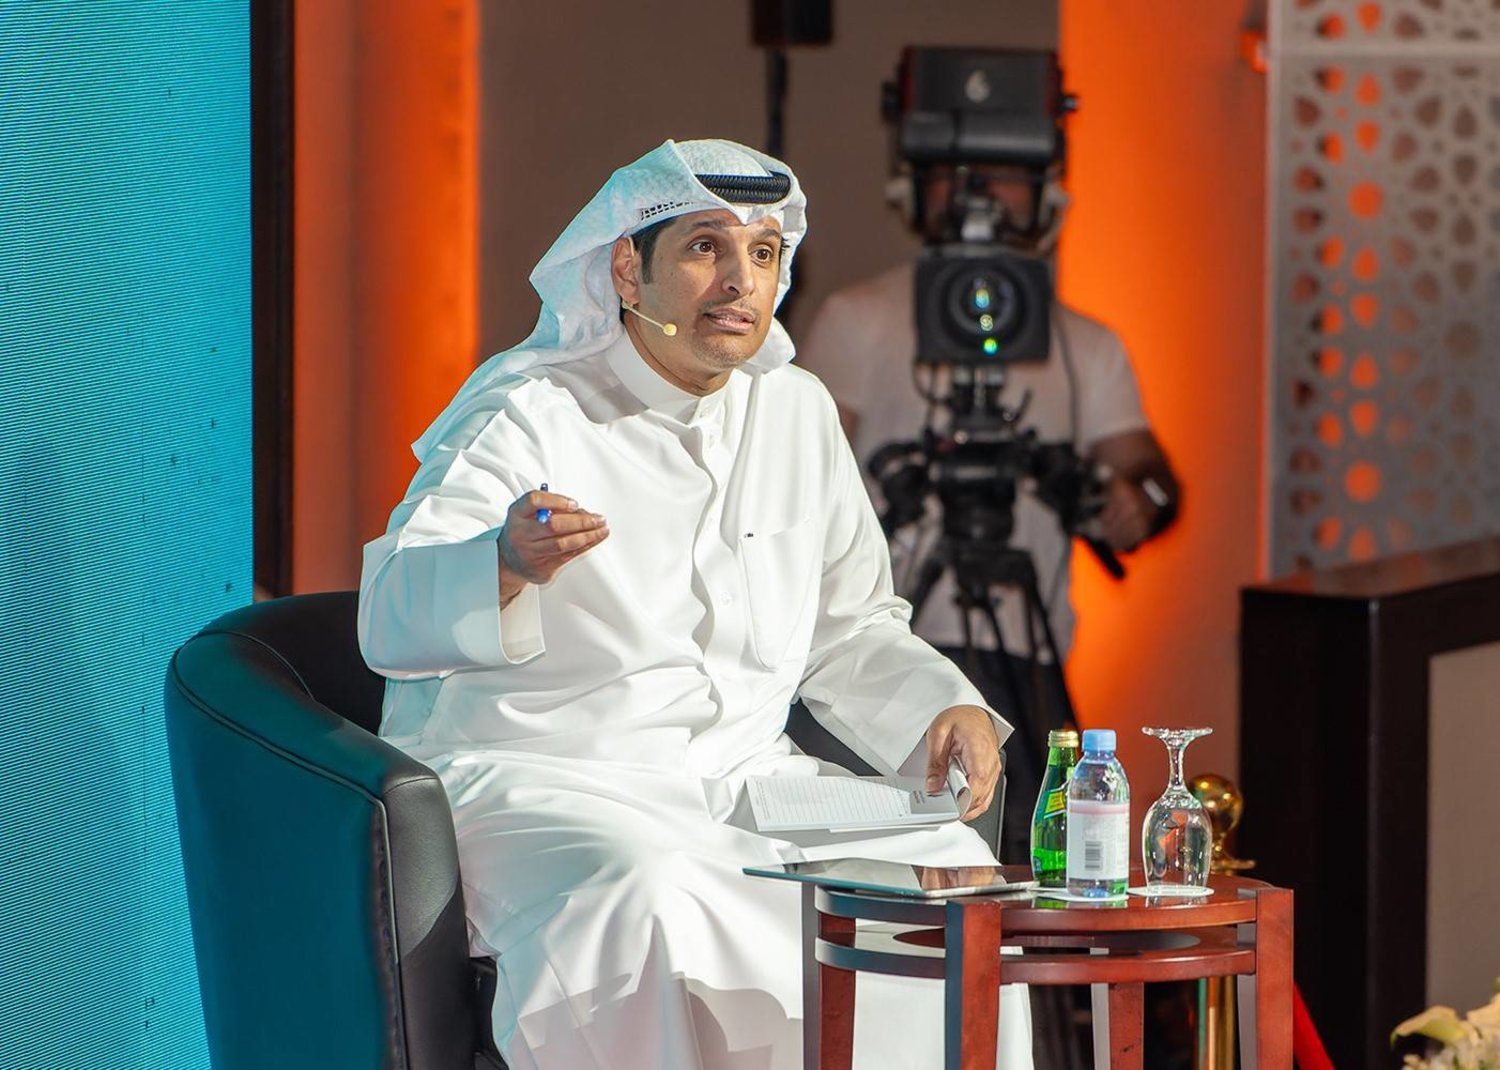  وزير الإعلام الكويتي عبد الرحمن المطيري يوضح بنود المحظورات في مواد قوانين الإعلام المقترحة (كونا) 